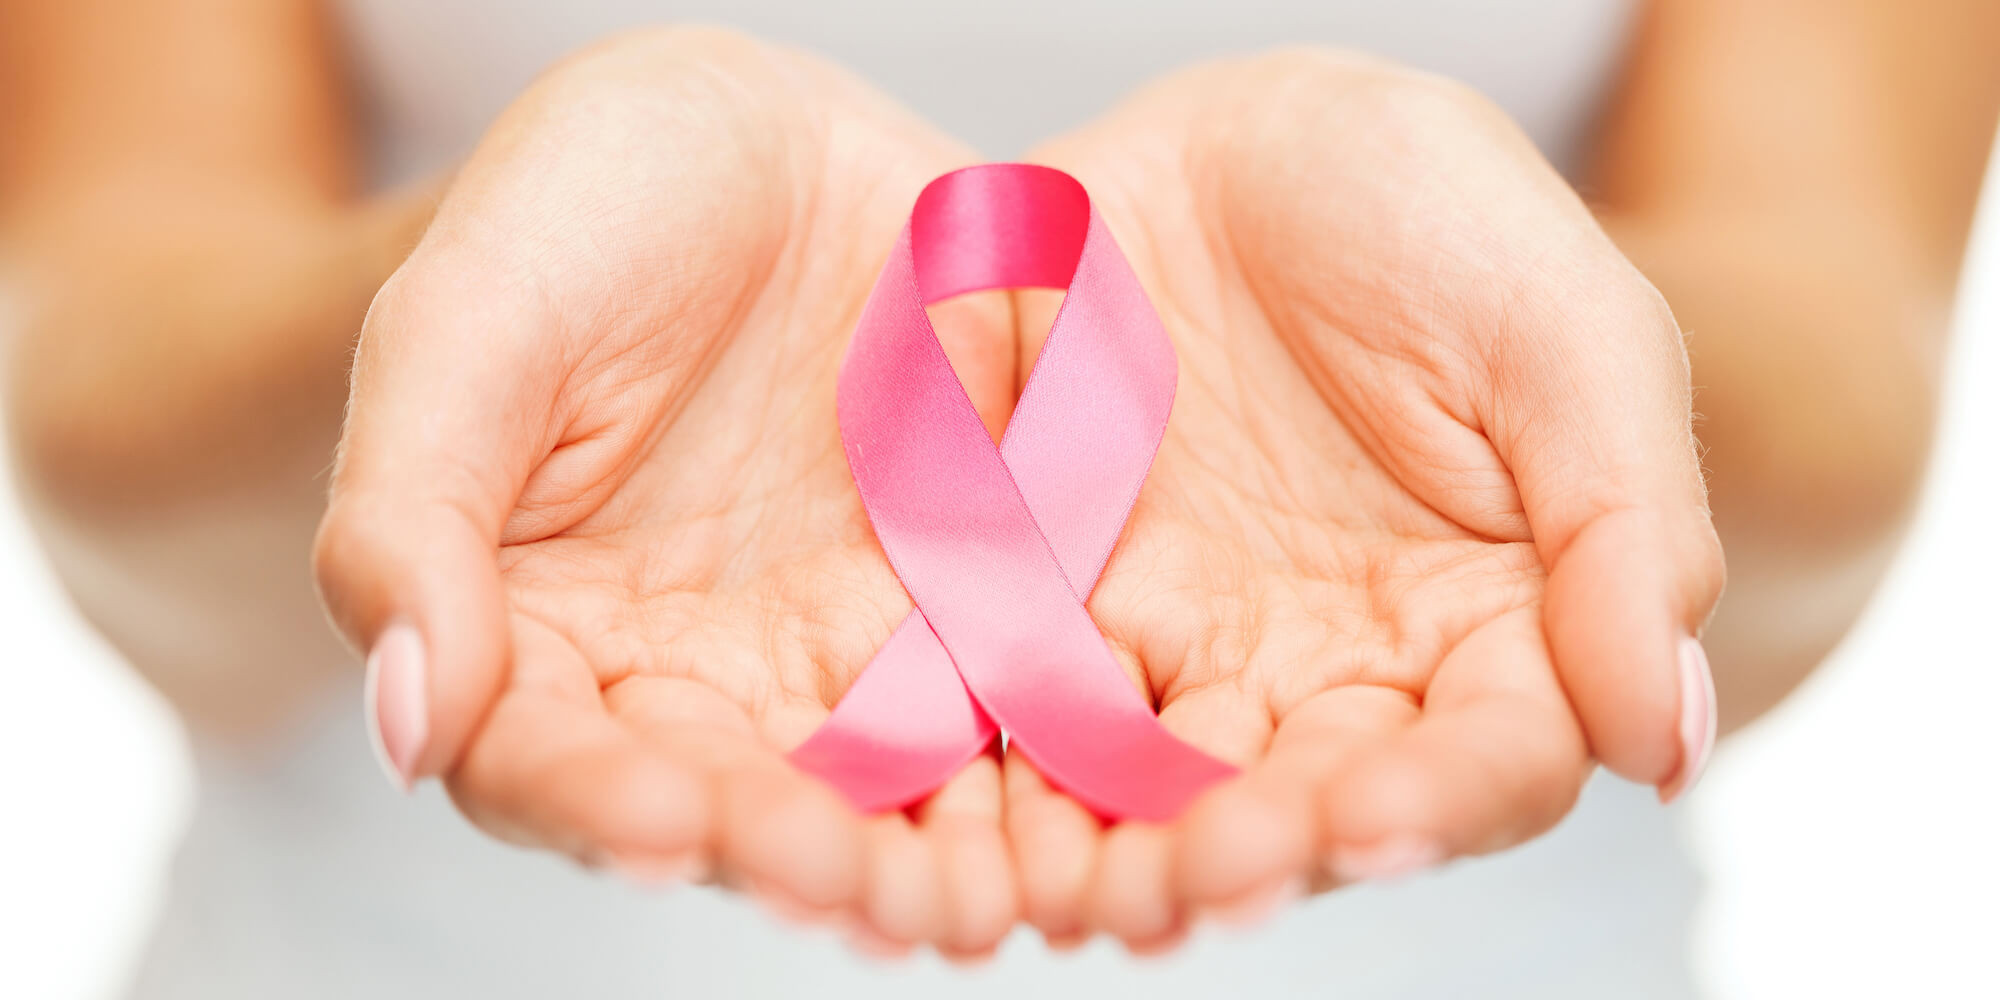 Καρκίνος του μαστού: Σημάδια που δεν πρέπει να αγνοήσετε